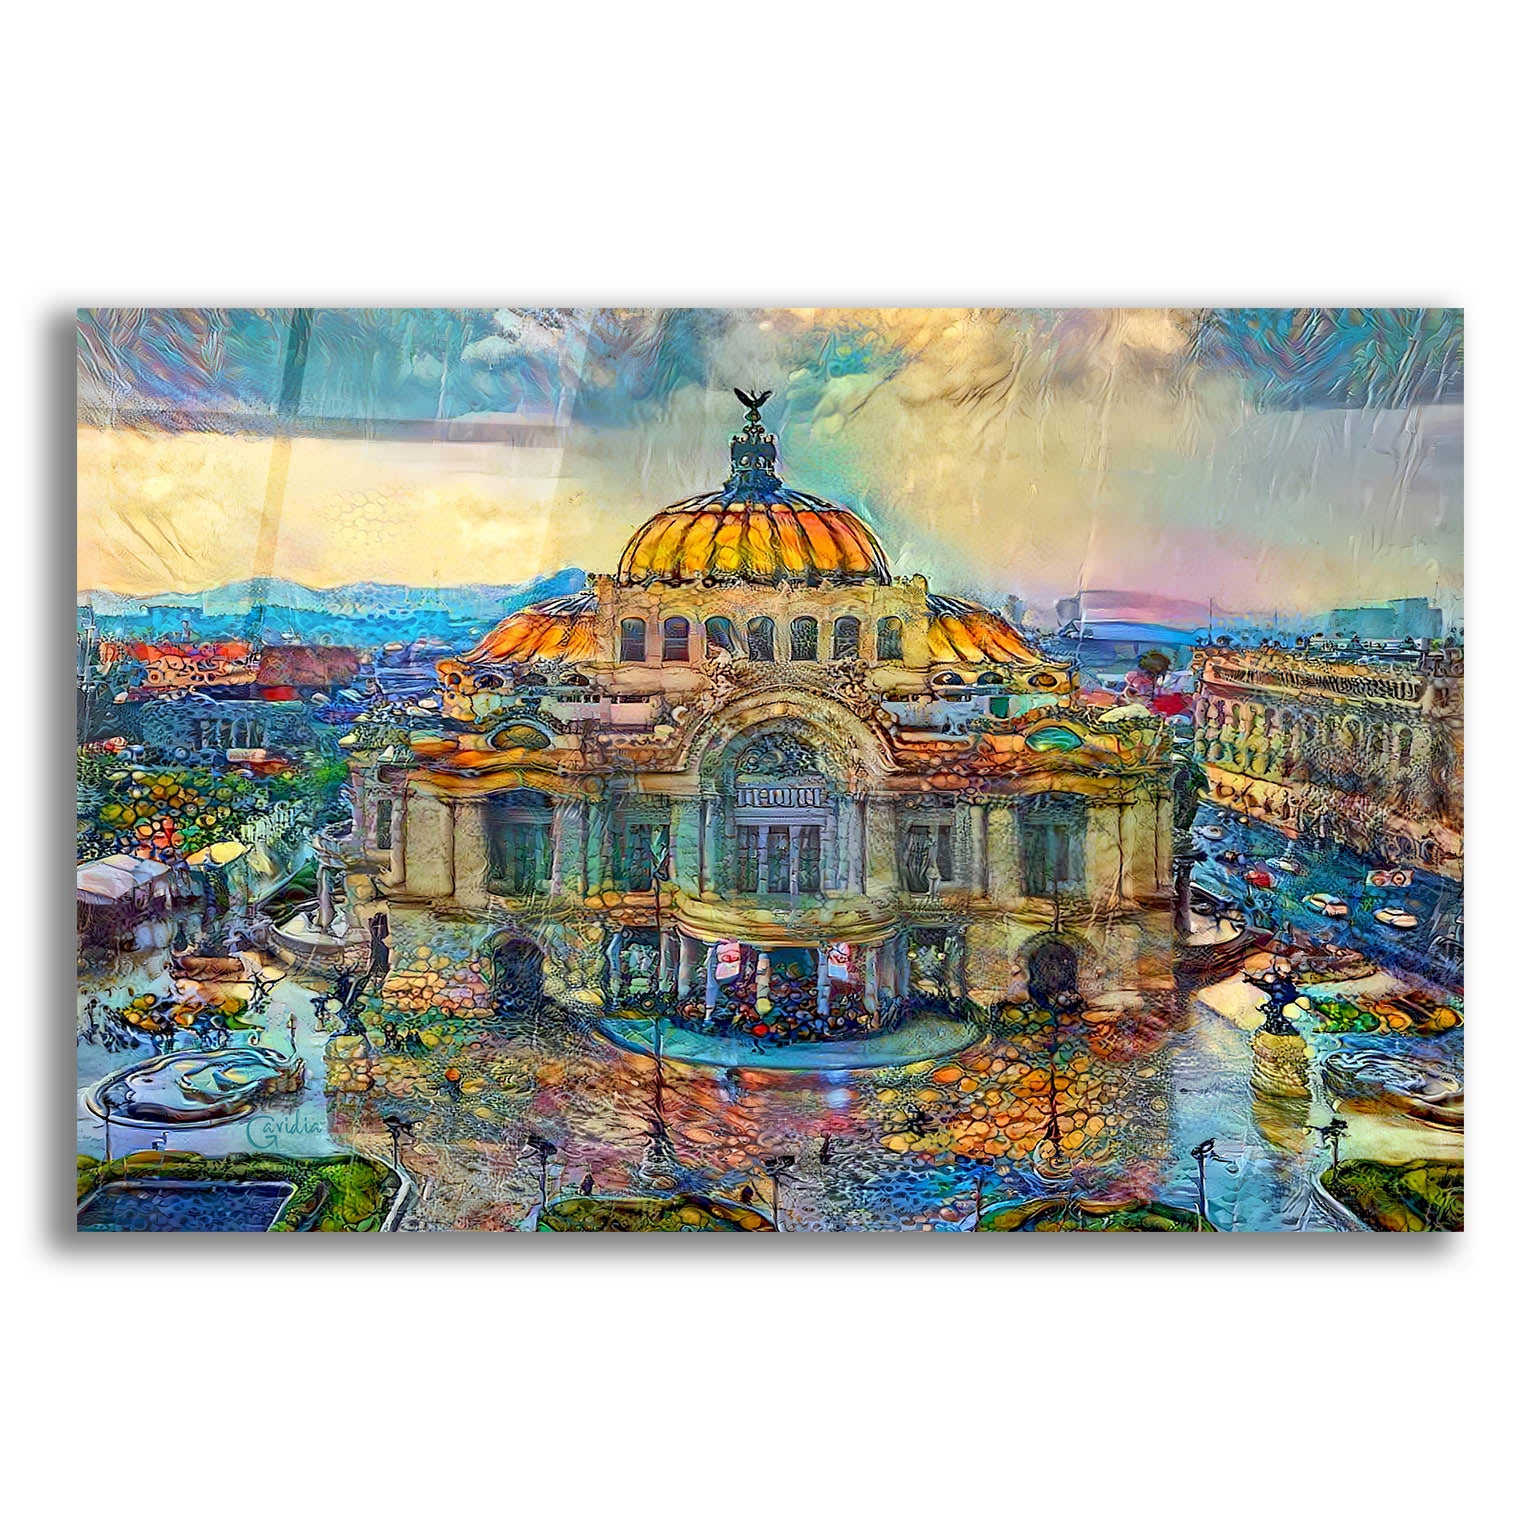 Epic Art 'Mexico City Palace of Fine Arts in the rain' by Pedro Gavidia, Acrylic Glass Wall Art,16x12